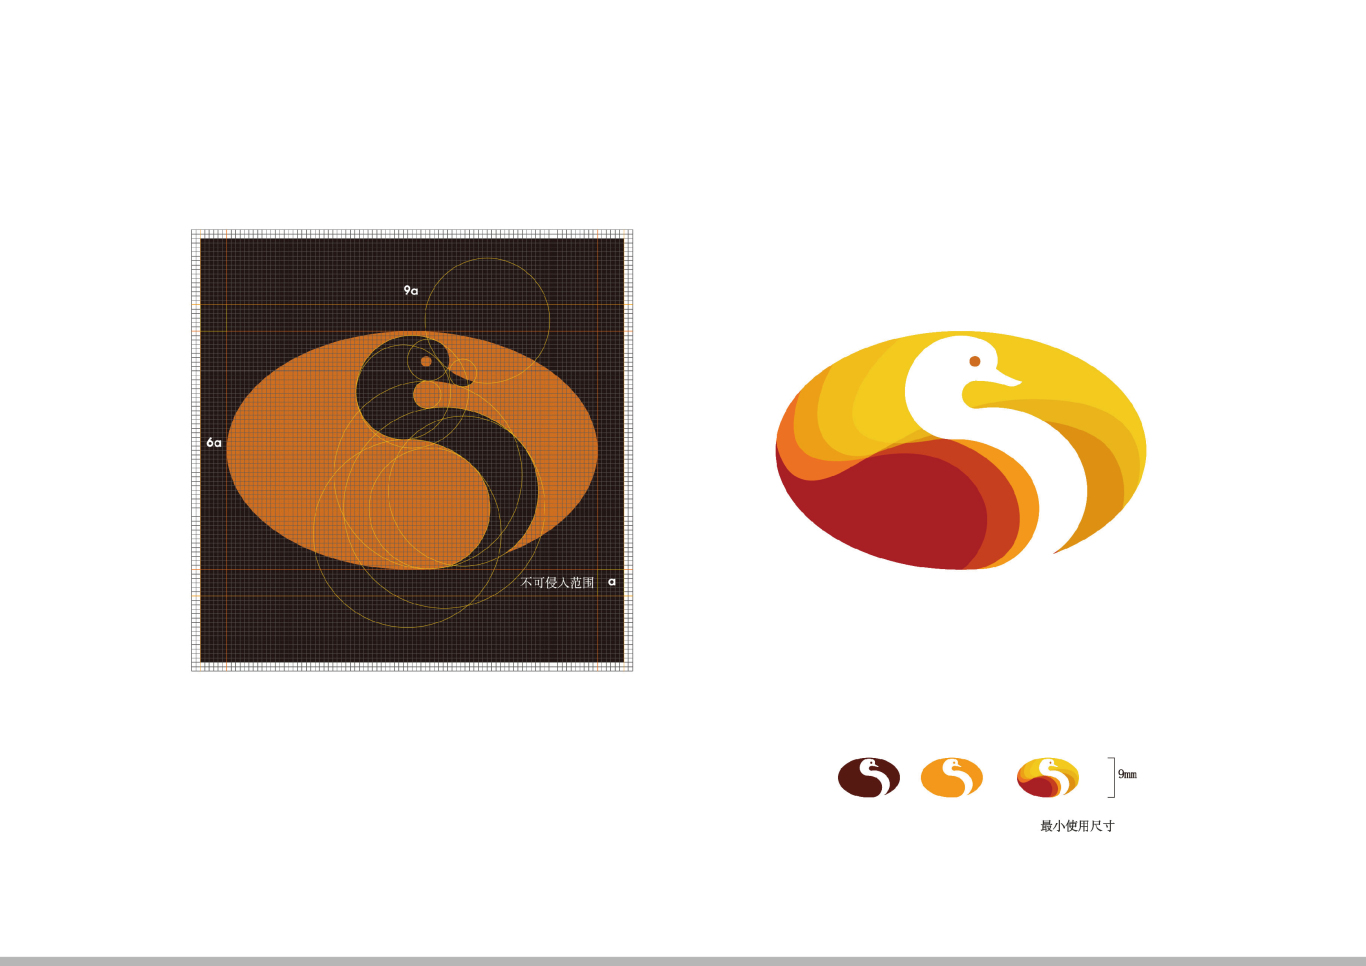 太极烤鸭餐厅 标志及品牌识别整体设计图0